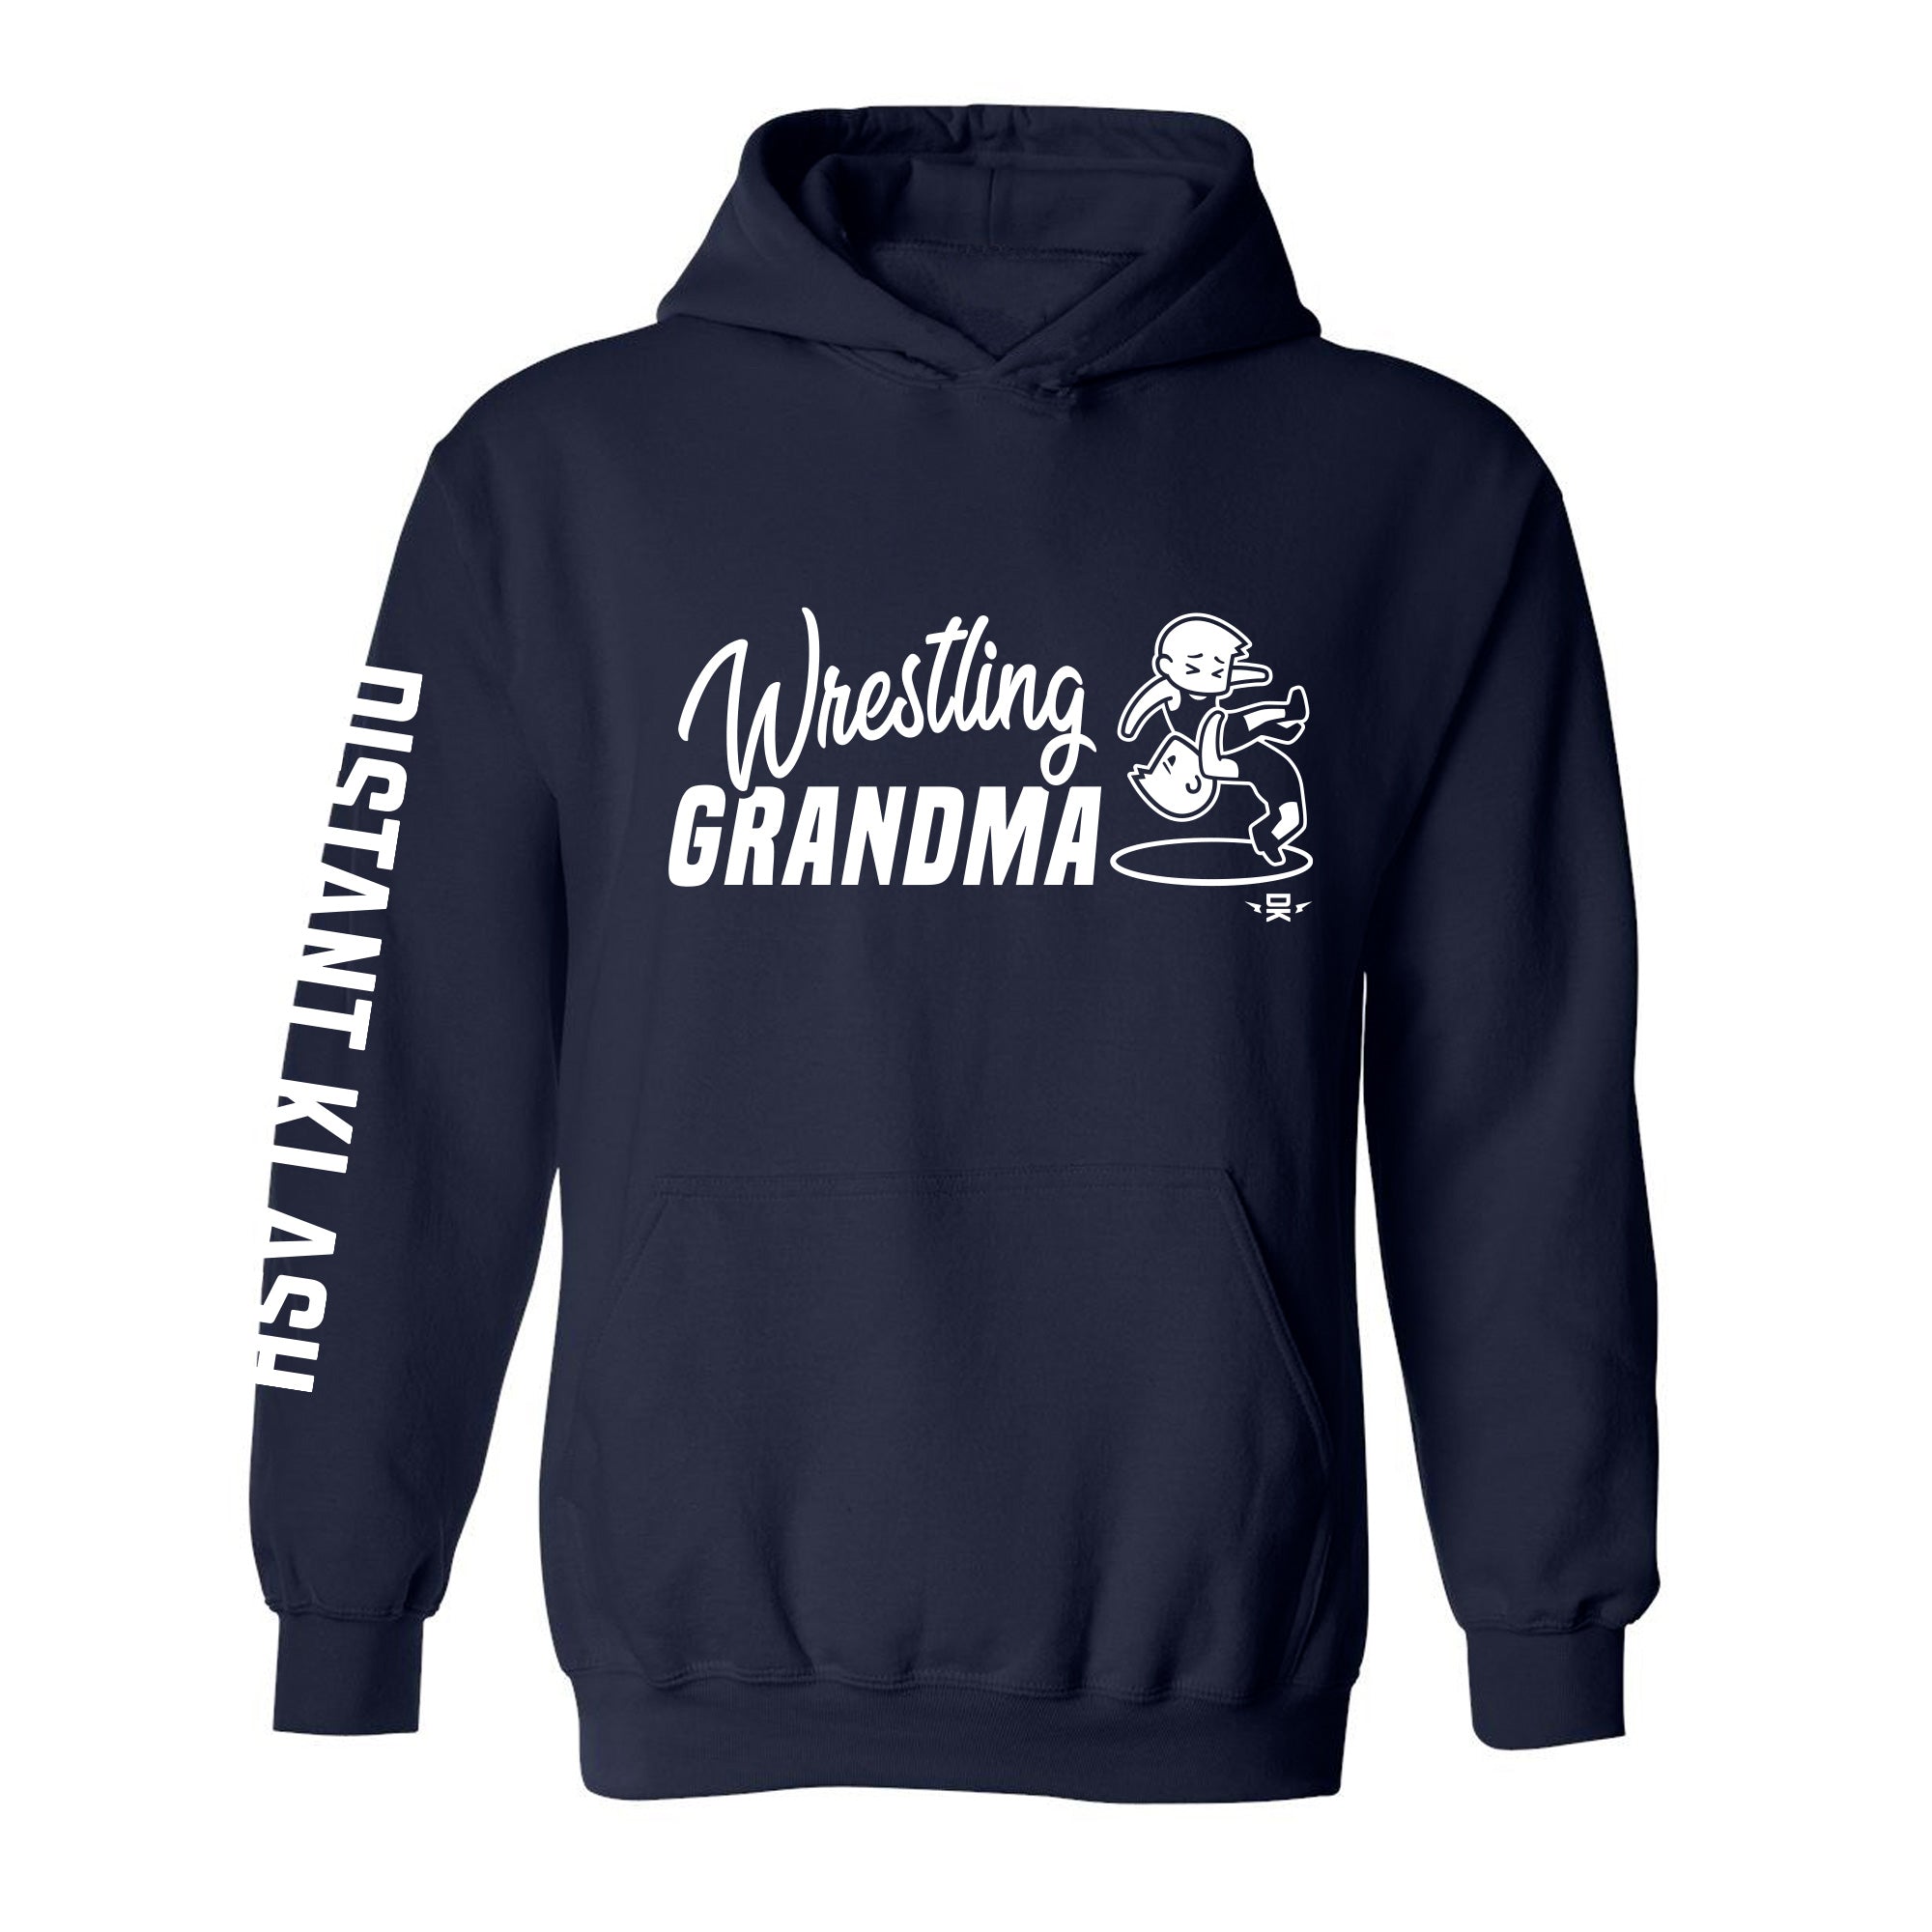 Wrestling Grandma Hoodie - Black, Navy, Red